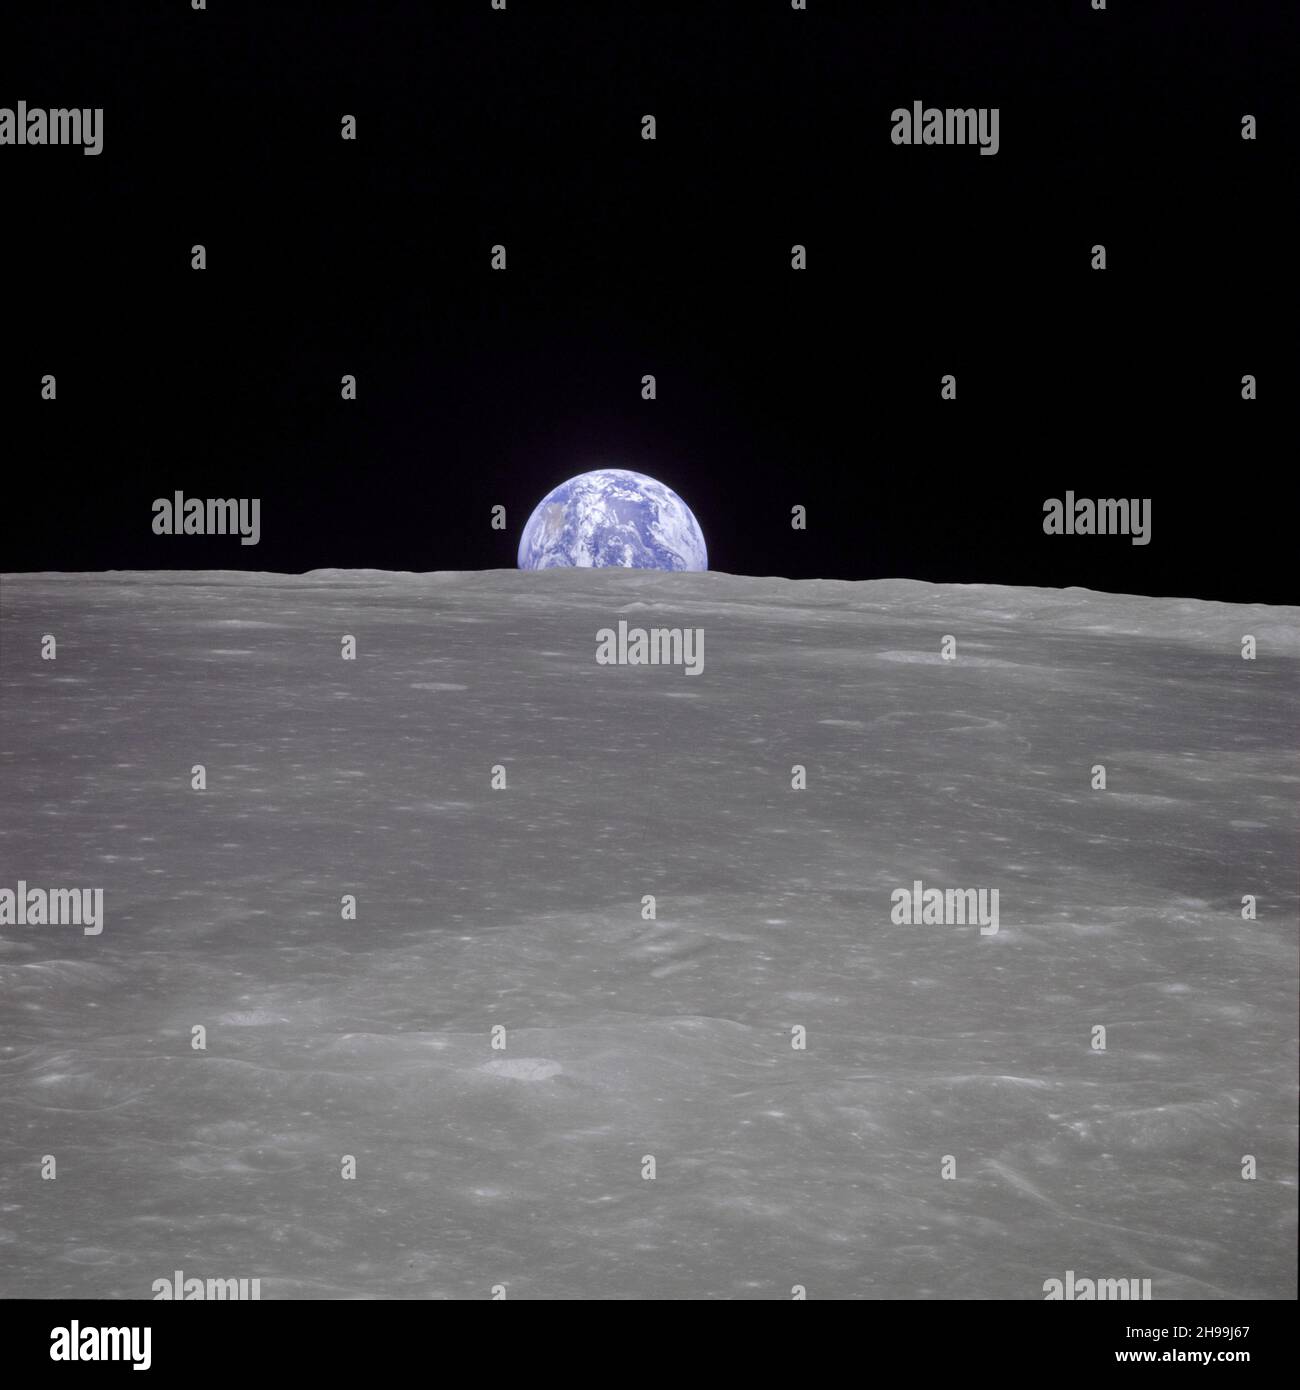 Vista de la Tierra desde la nave espacial Apolo 11 muestra la Tierra elevándose por encima del horizonte de la luna. Foto de stock